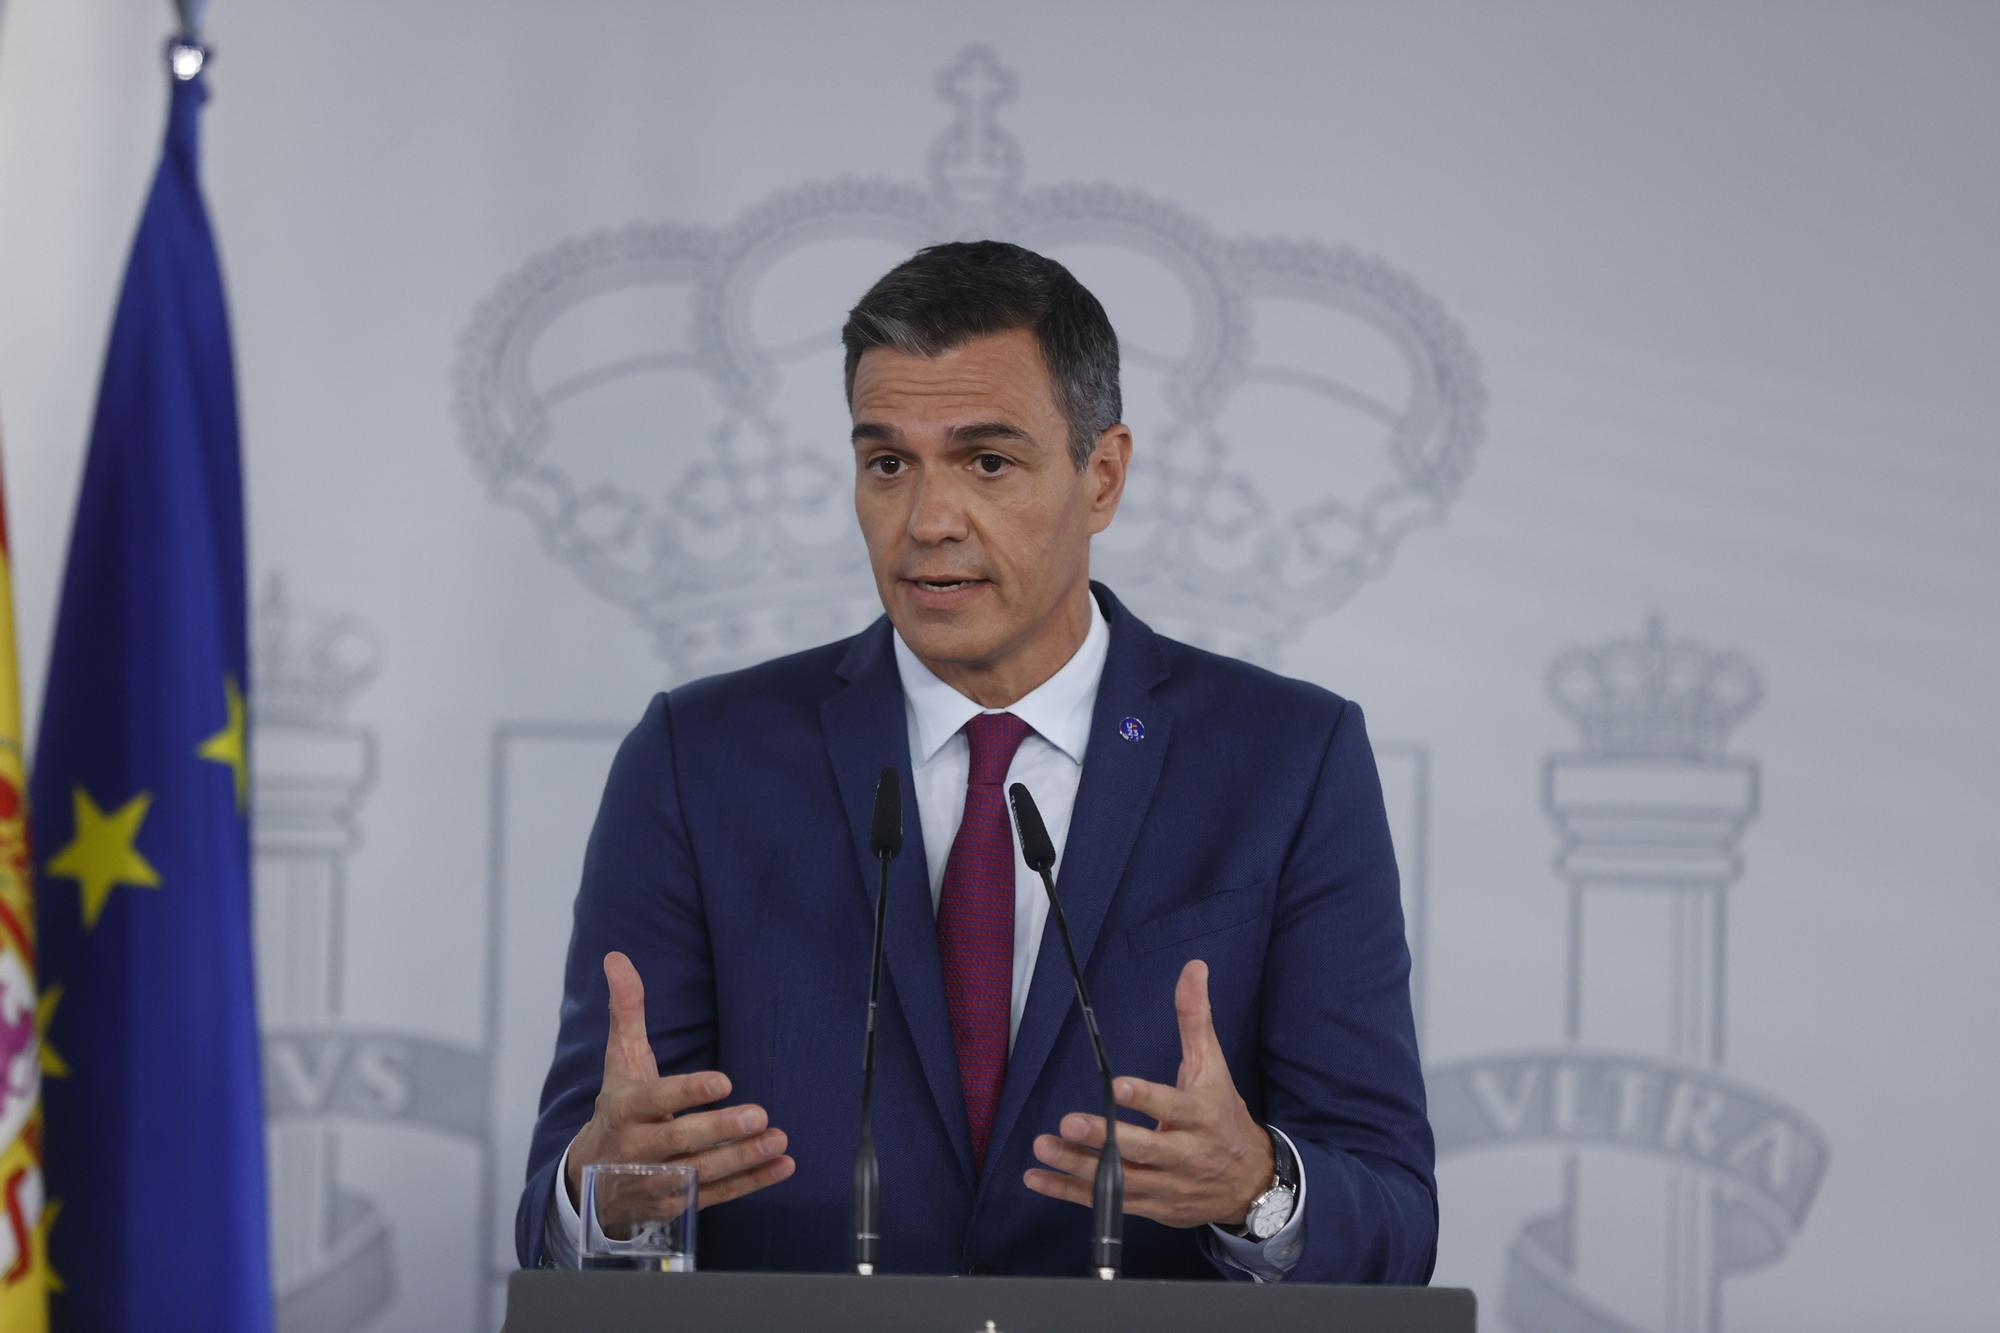 Pedro Sánchez, respecto a Rubiales: "Es un gesto inaceptable. Tiene que ser más contundente en la petición de disculpas"